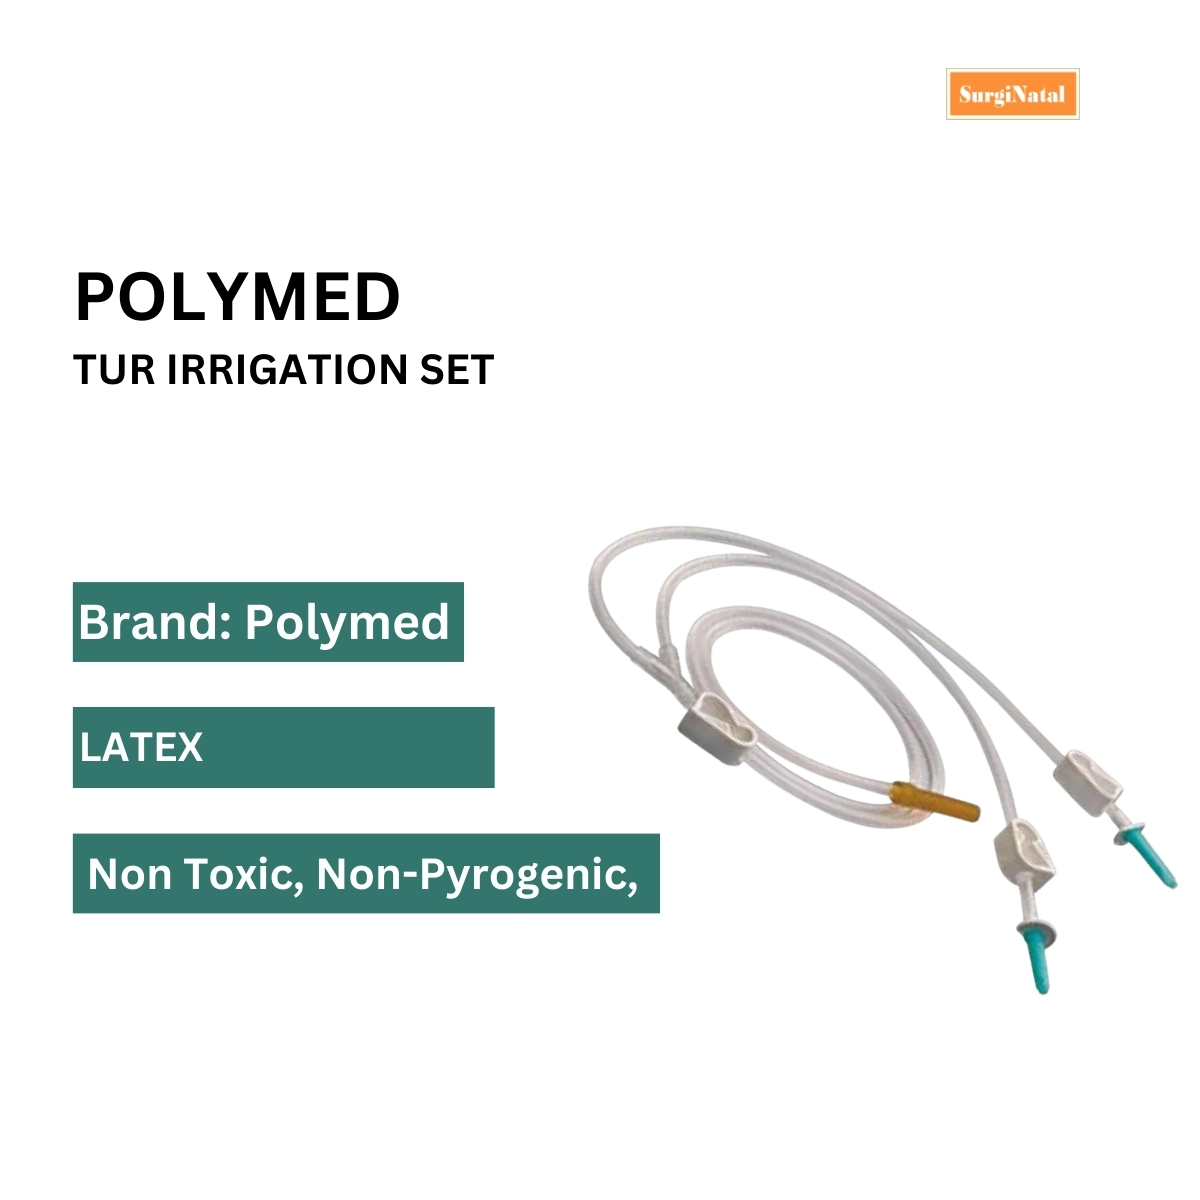  polymed tur irrigation set